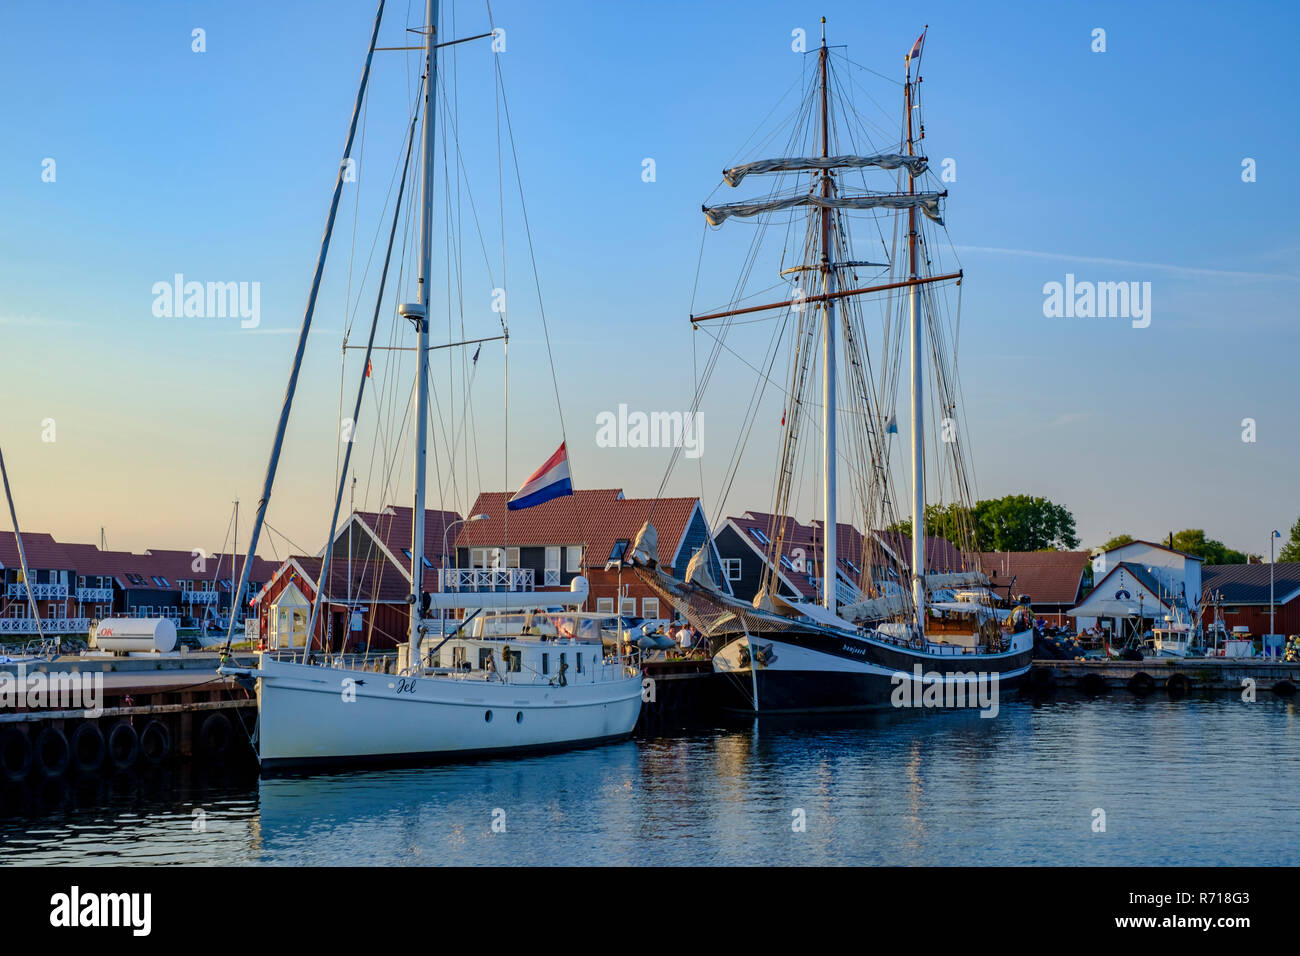 The schooner BANJAARD has moored in the port of Klintholm Havn, Moen Island, Denmark. Stock Photo